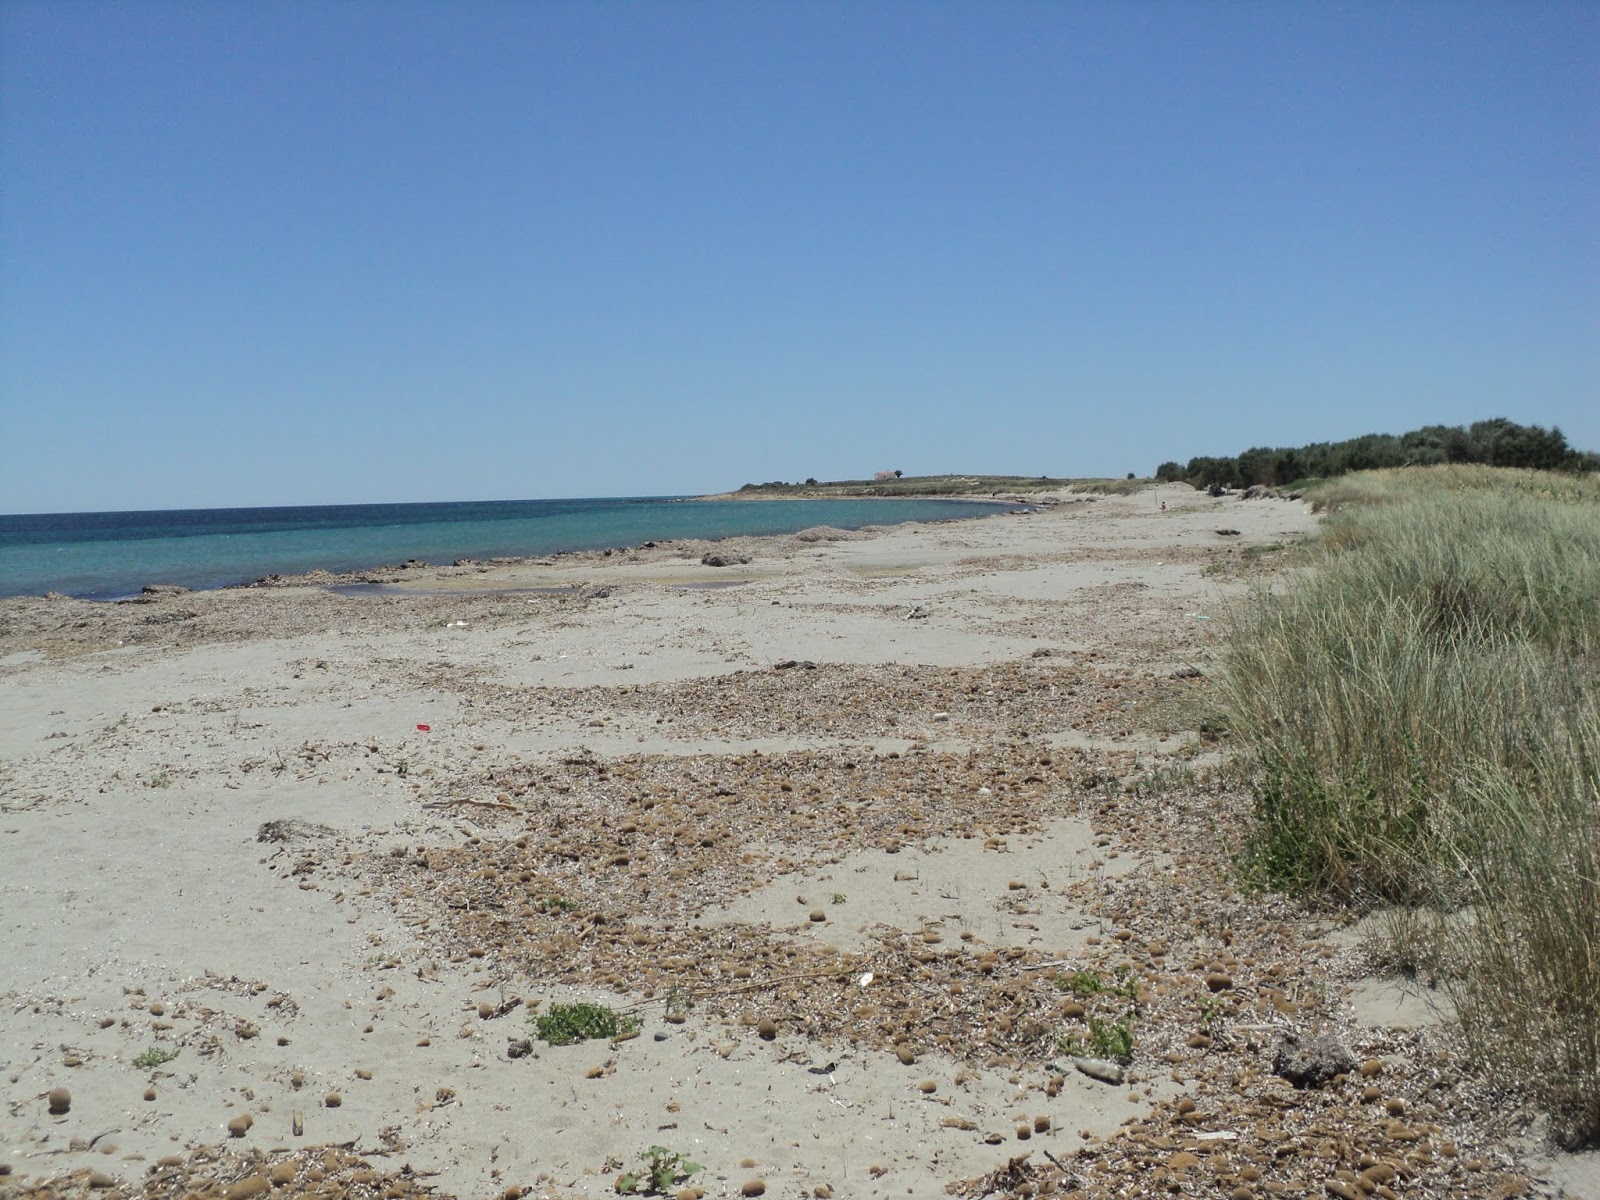 Fotografie cu Paralia Panagias cu o suprafață de nisip strălucitor